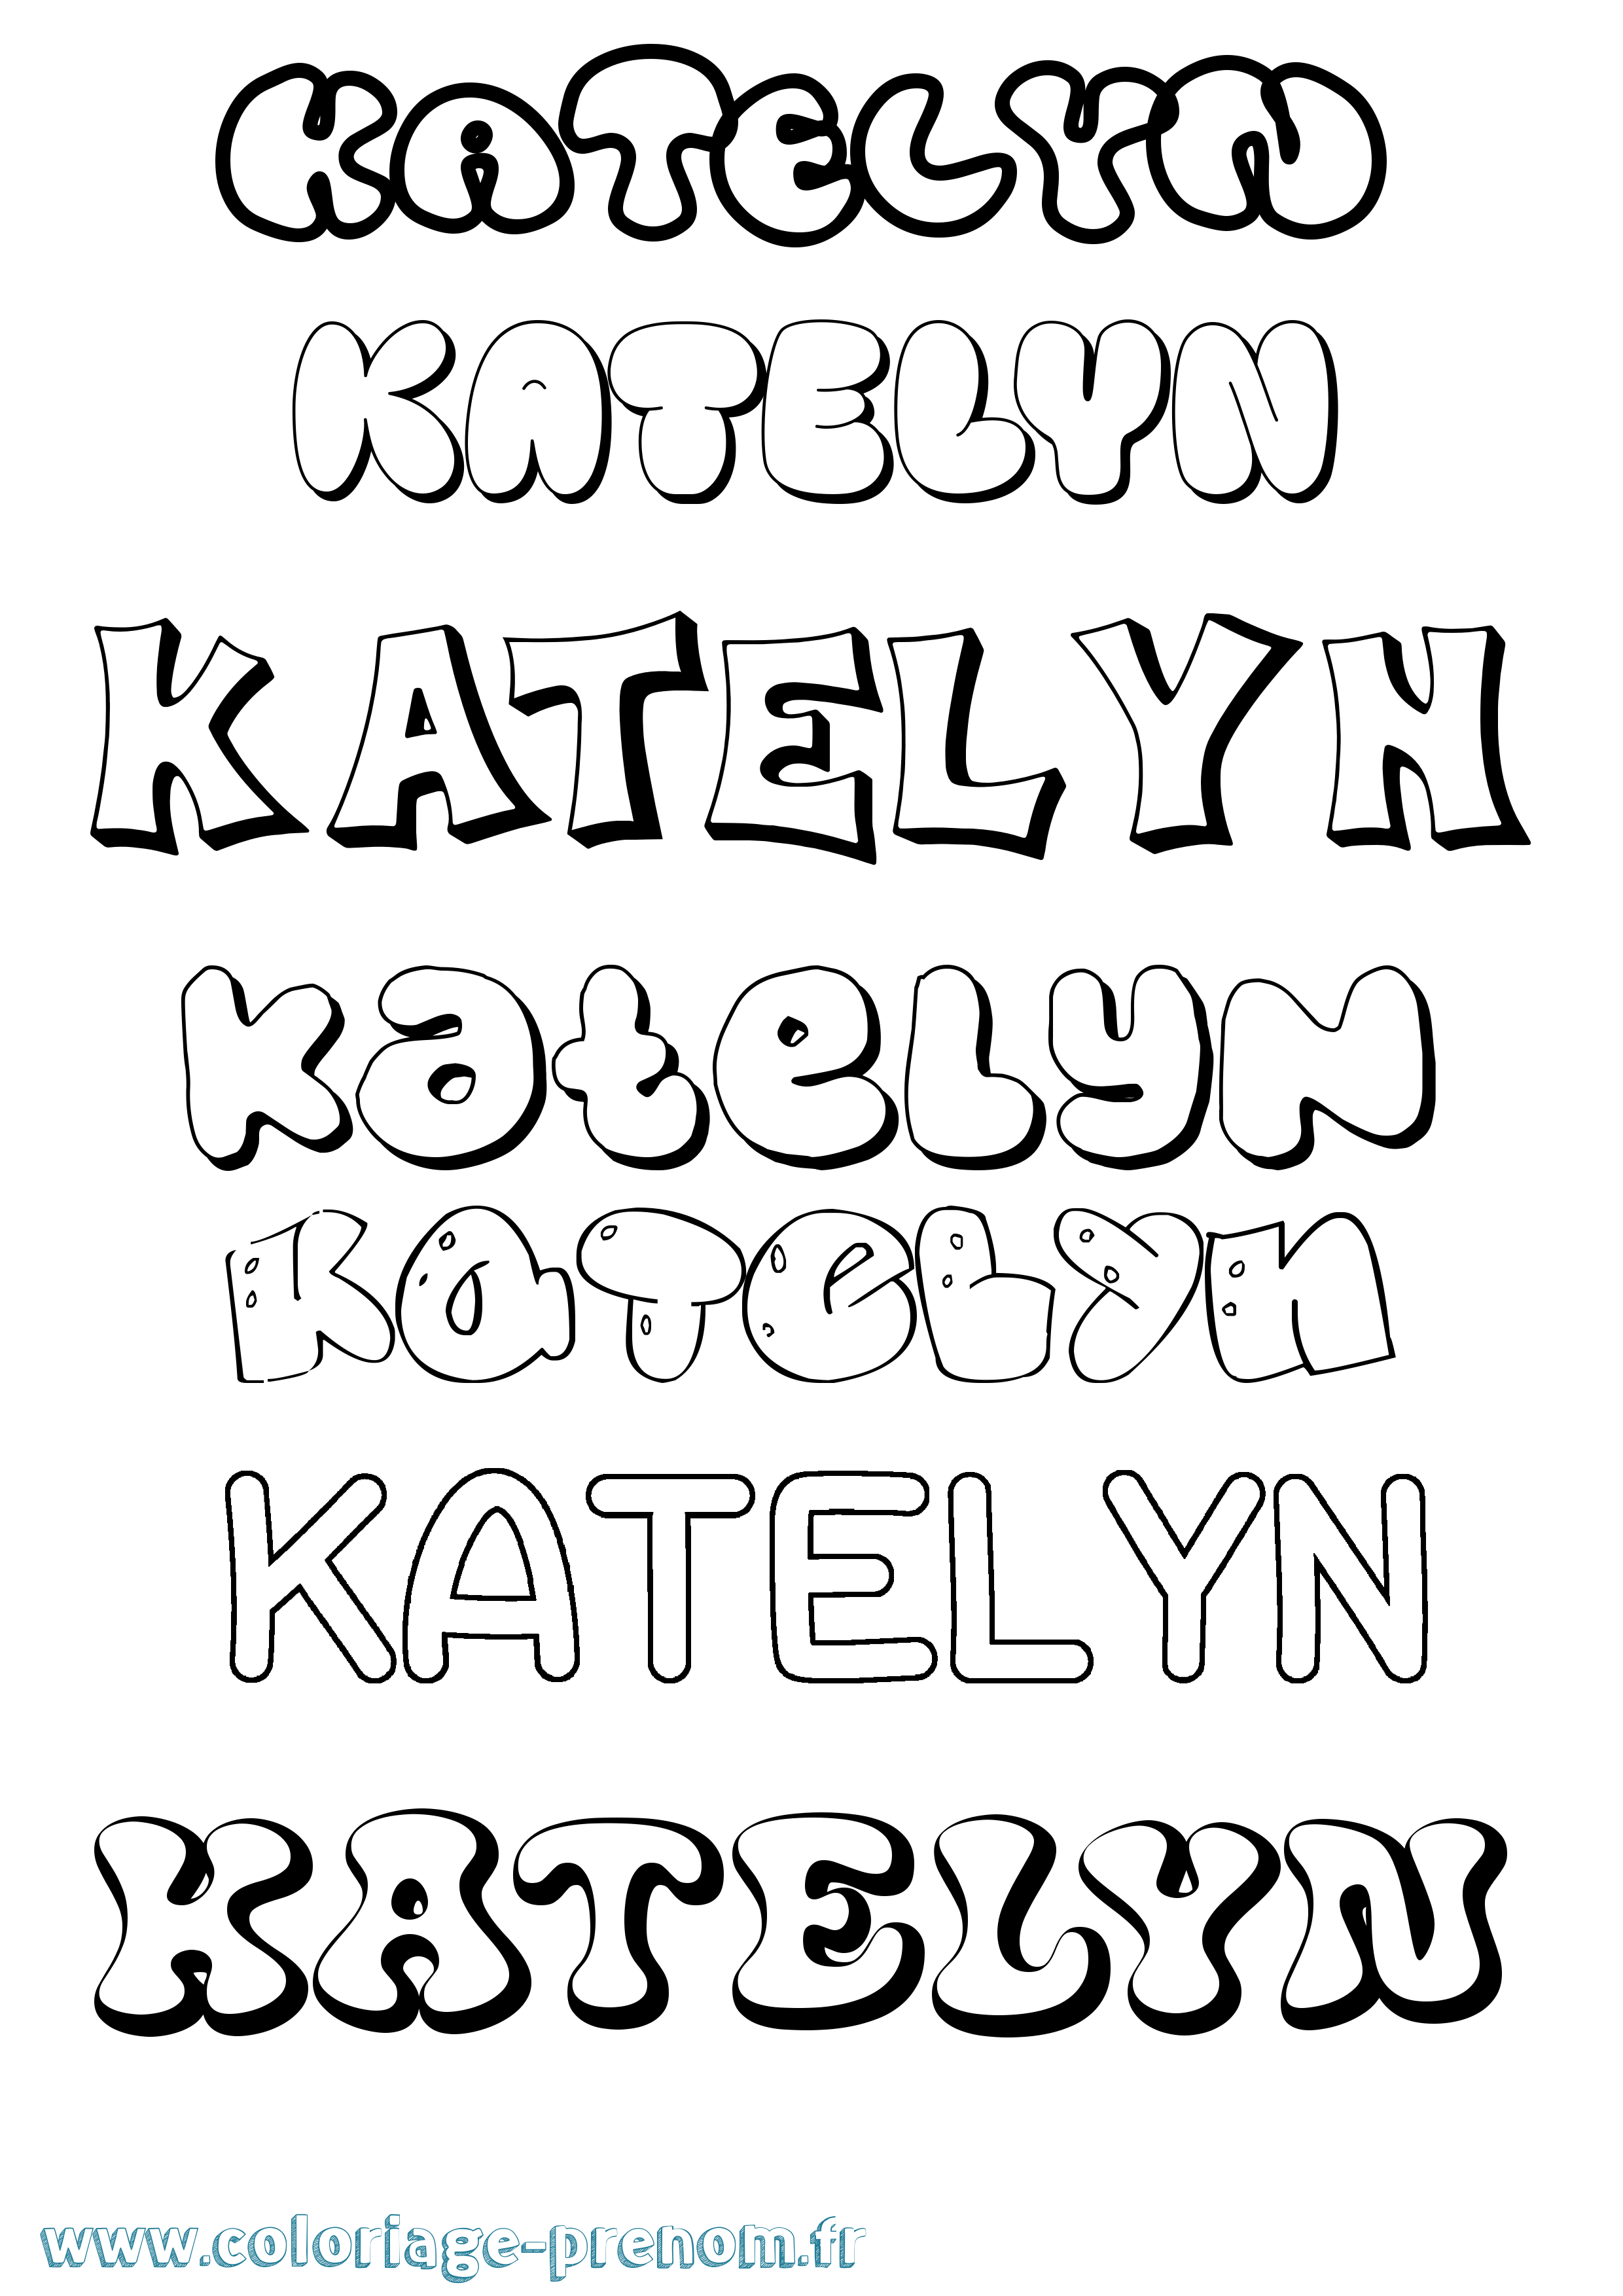 Coloriage prénom Katelyn Bubble